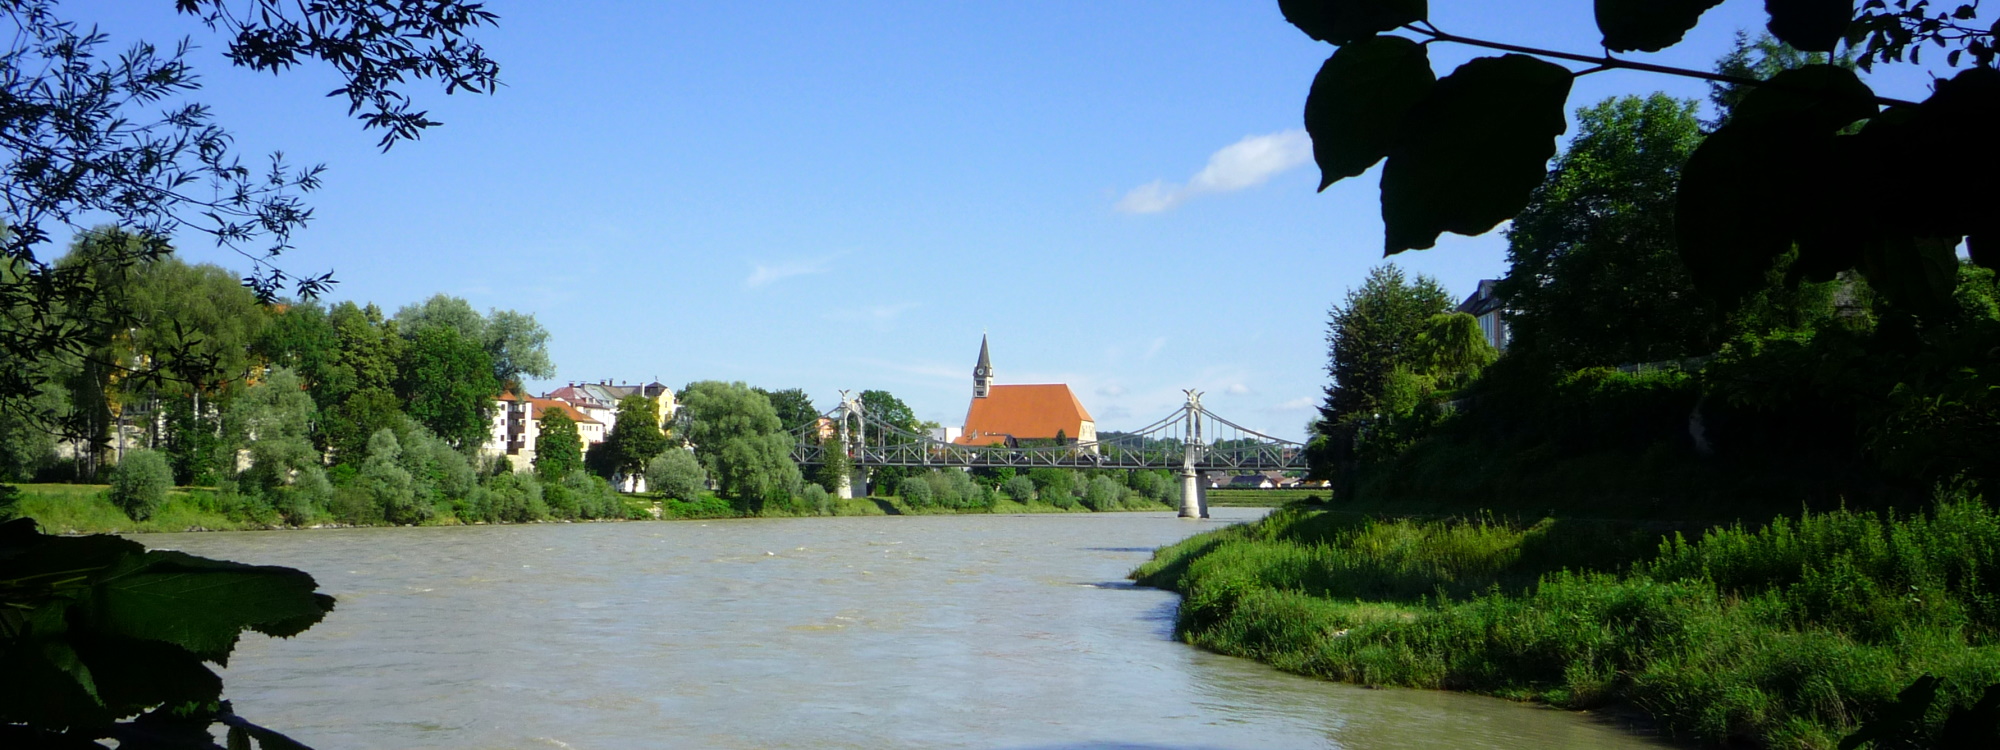 Landschaftsaufnahme des Salzachflussbetts mit Stiftskirche und Länderbrücke in der Ferne